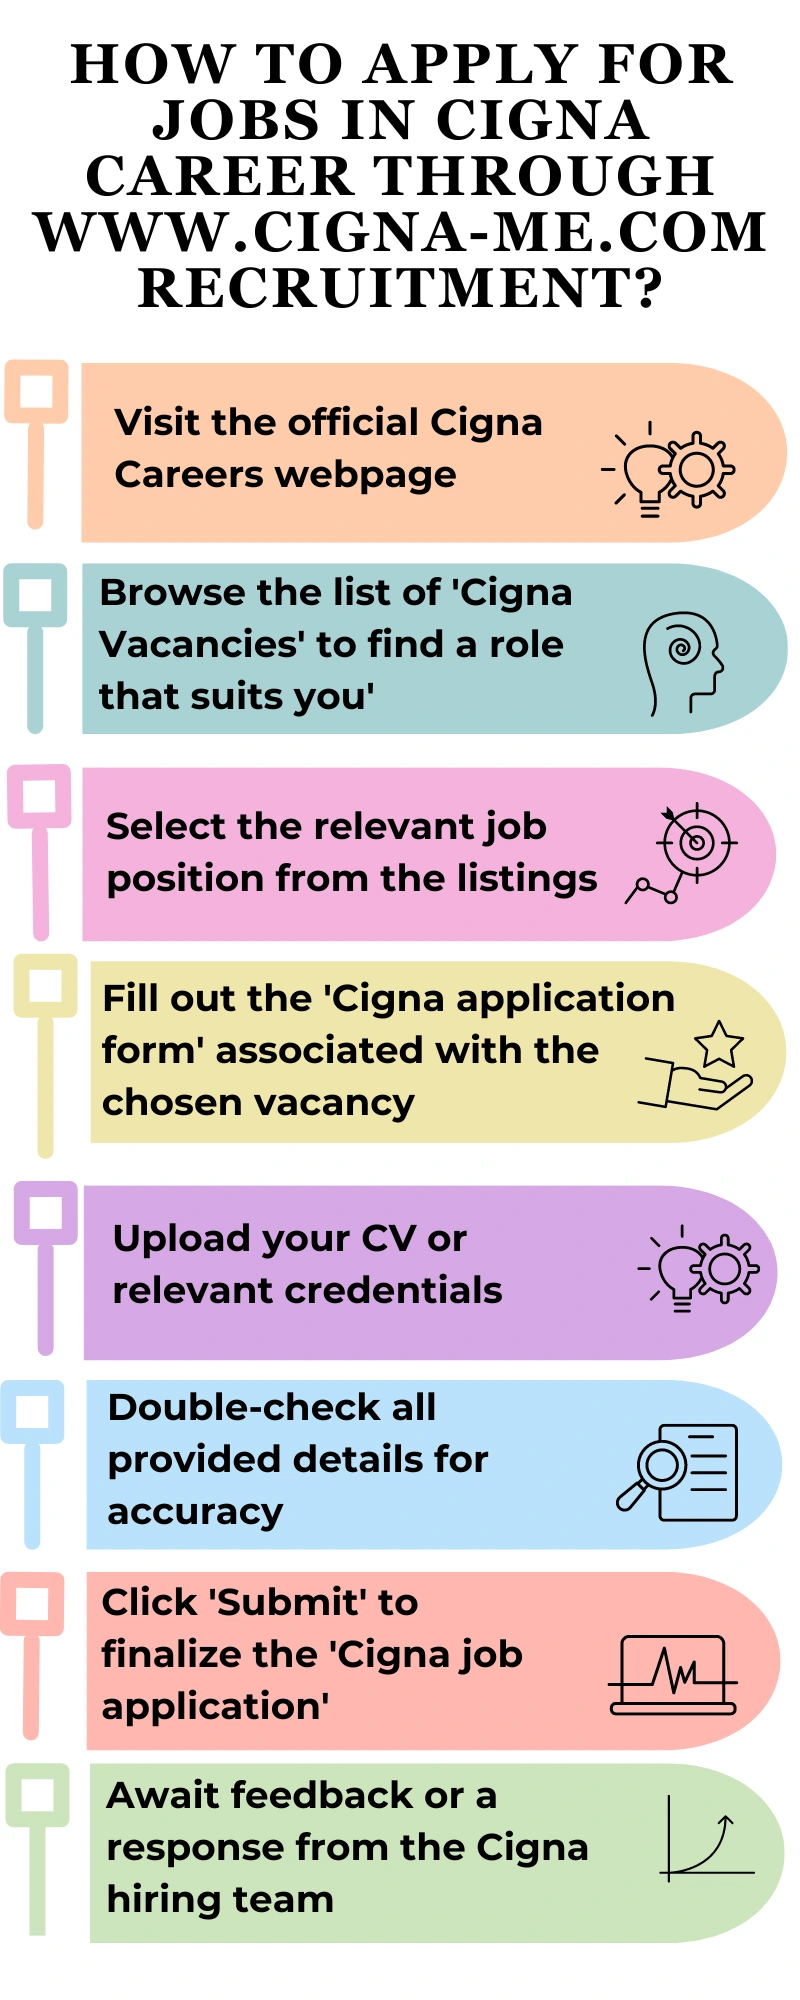 How to Apply for Jobs in Cigna Career through www.cigna-me.com recruitment?